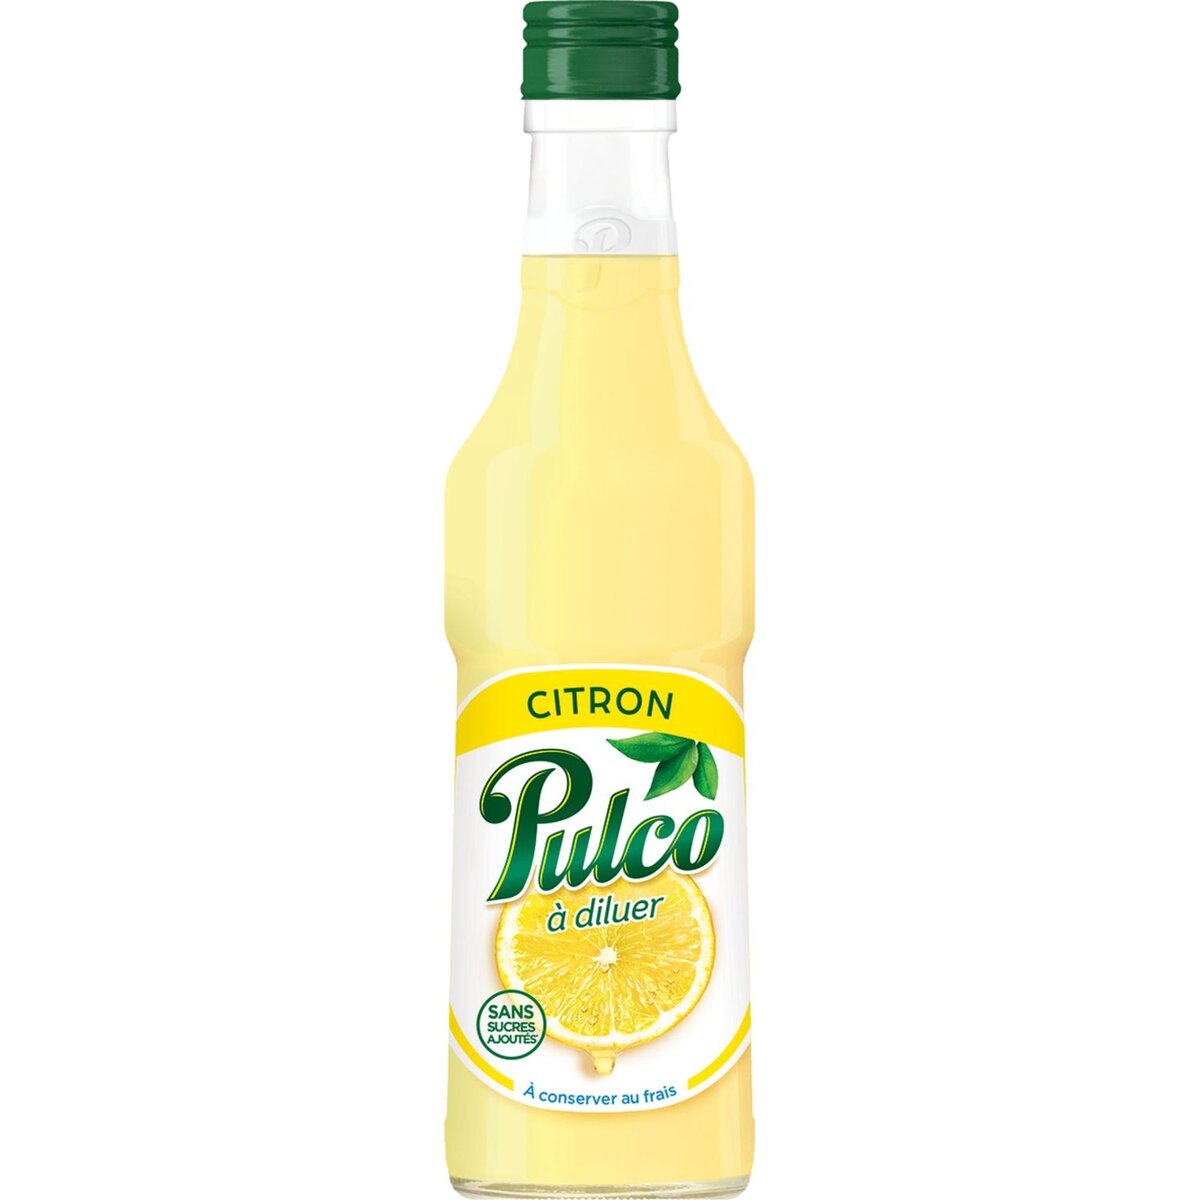 Achat Pulco · Jus de citrons - spécialité pour boissons • Migros